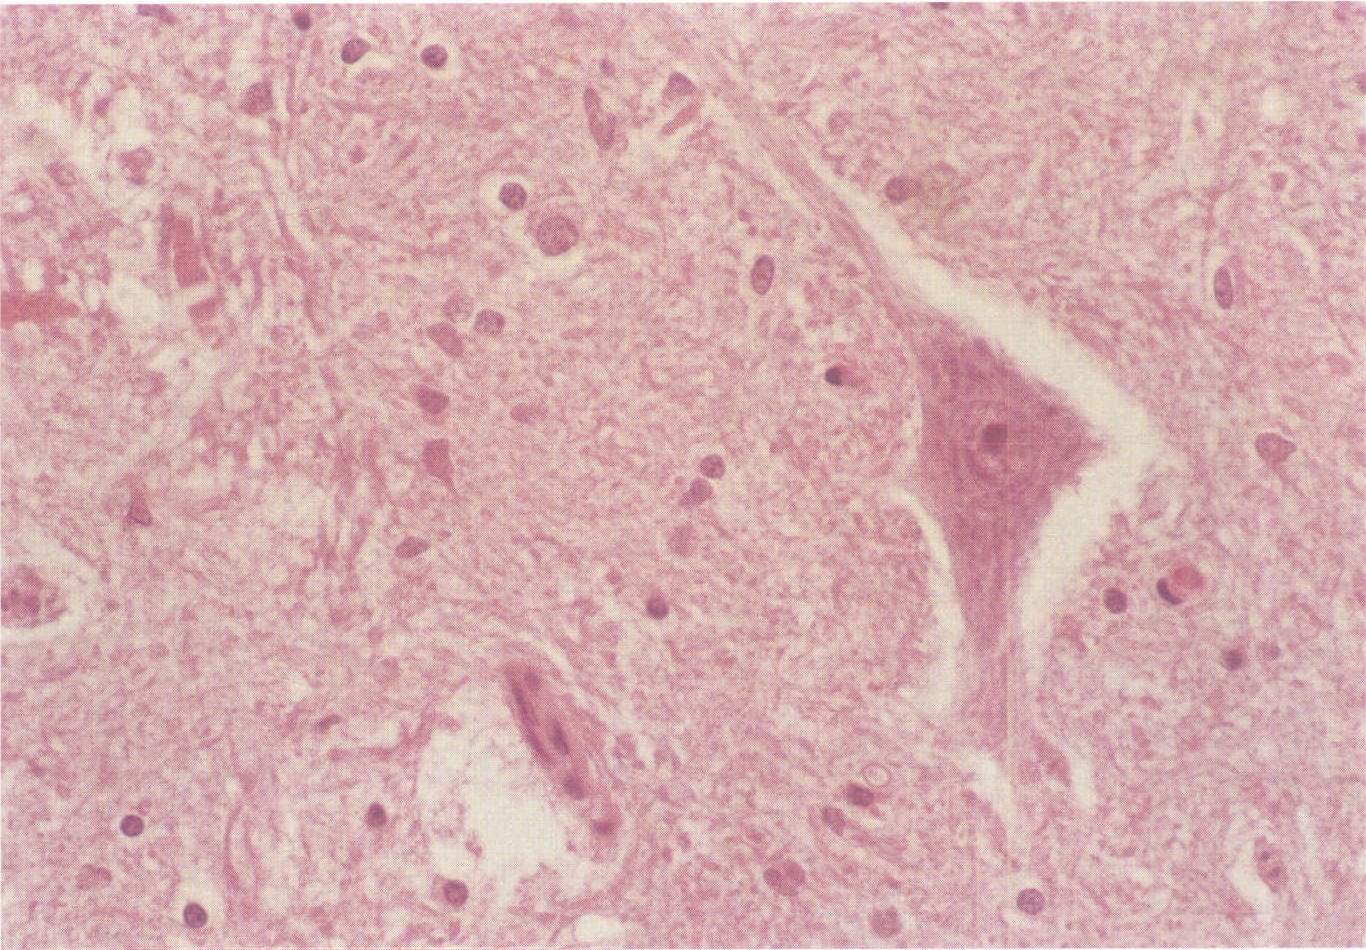 图1-9 神经元及周围散在的胶质细胞。HE染色，中倍